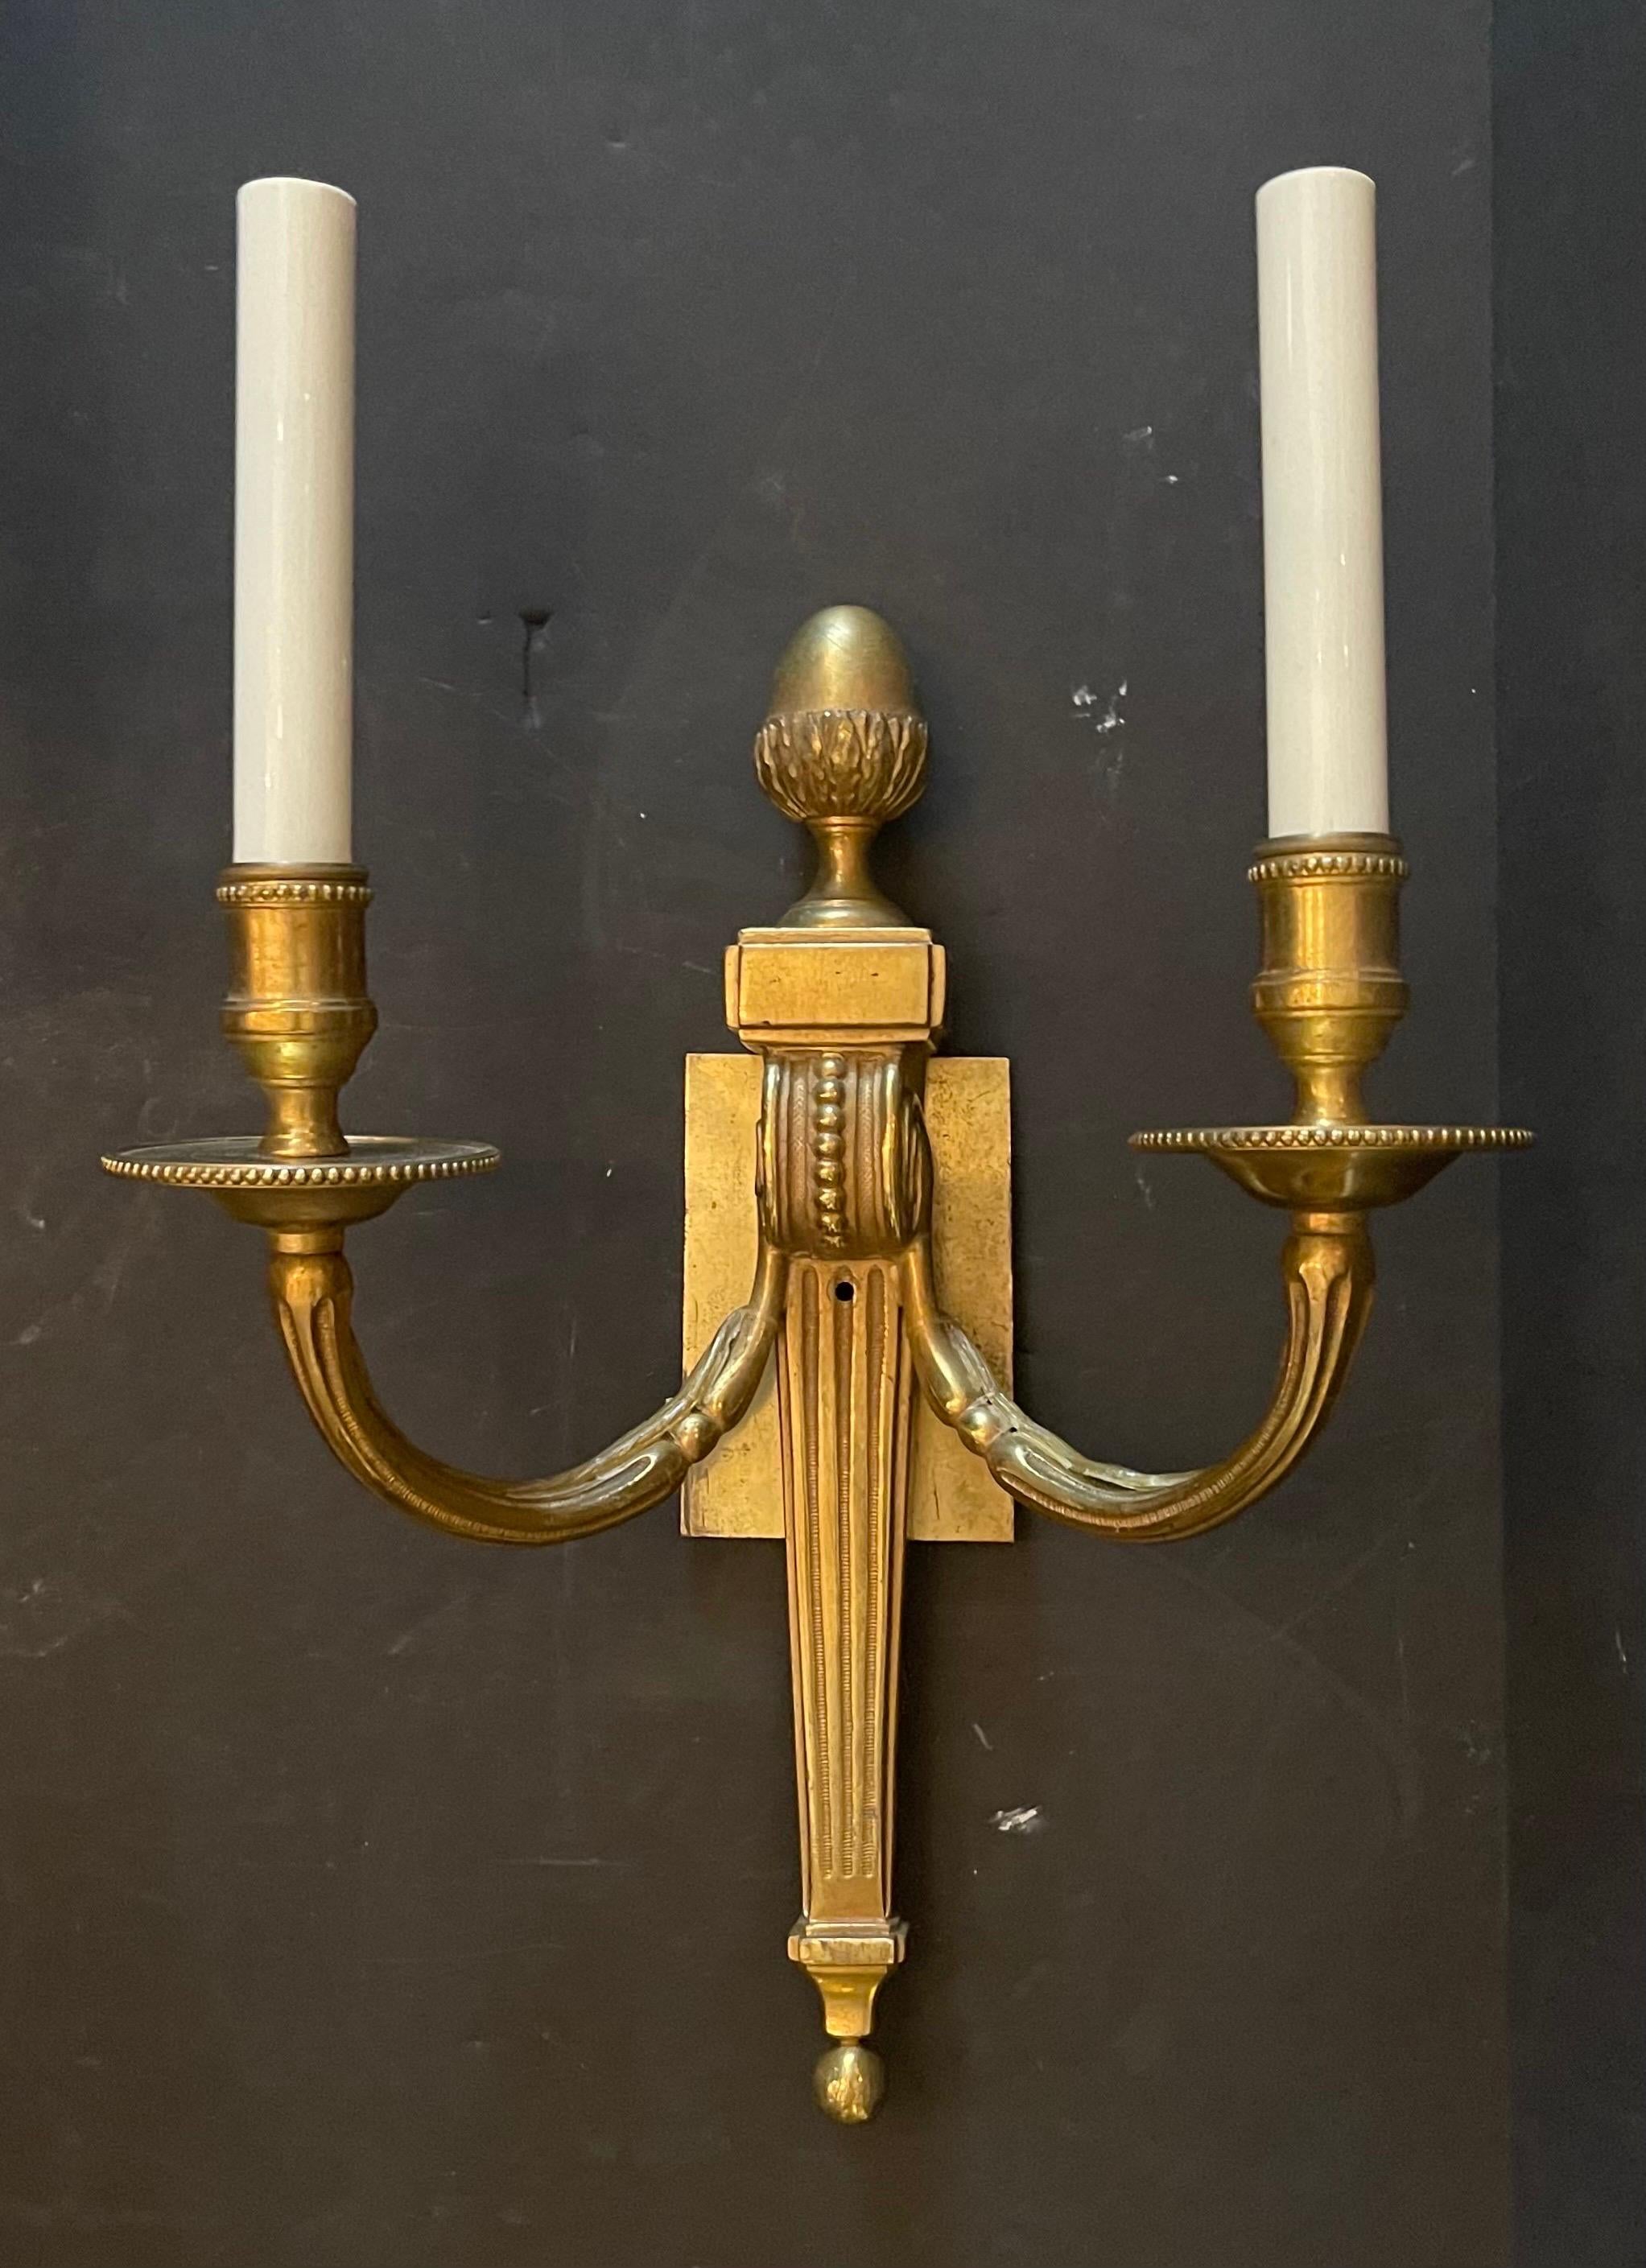 Une merveilleuse paire d'appliques en bronze Empire / néoclassique à deux candélabres en forme d'urne de la manière de E.F. Caldwell.